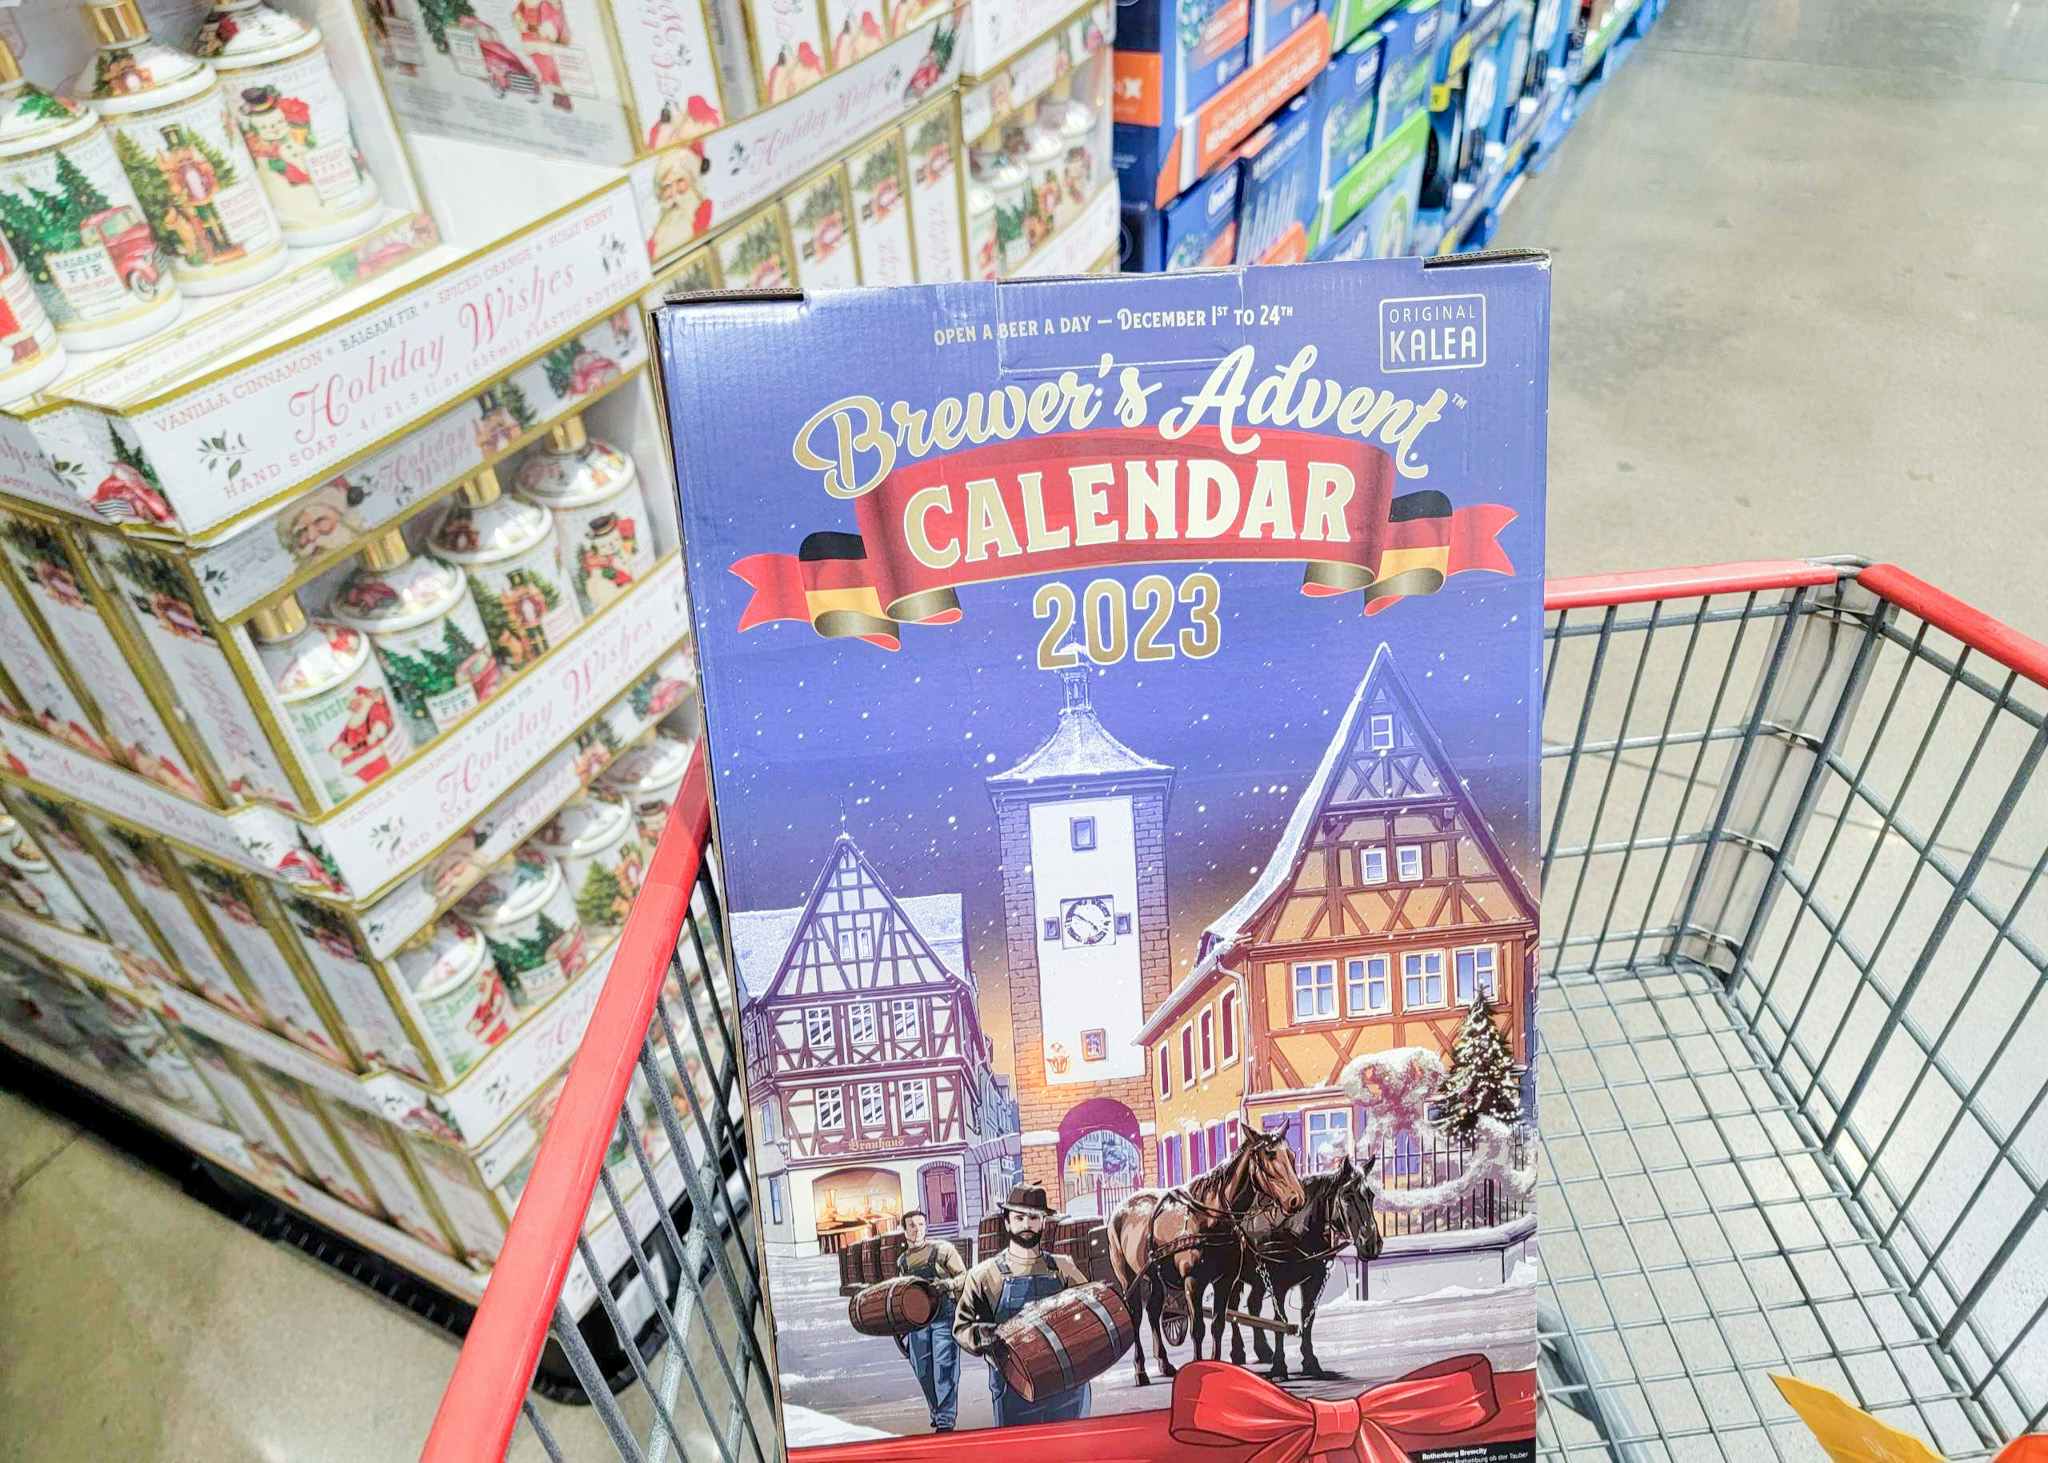 costco beer advent calendar in cart 